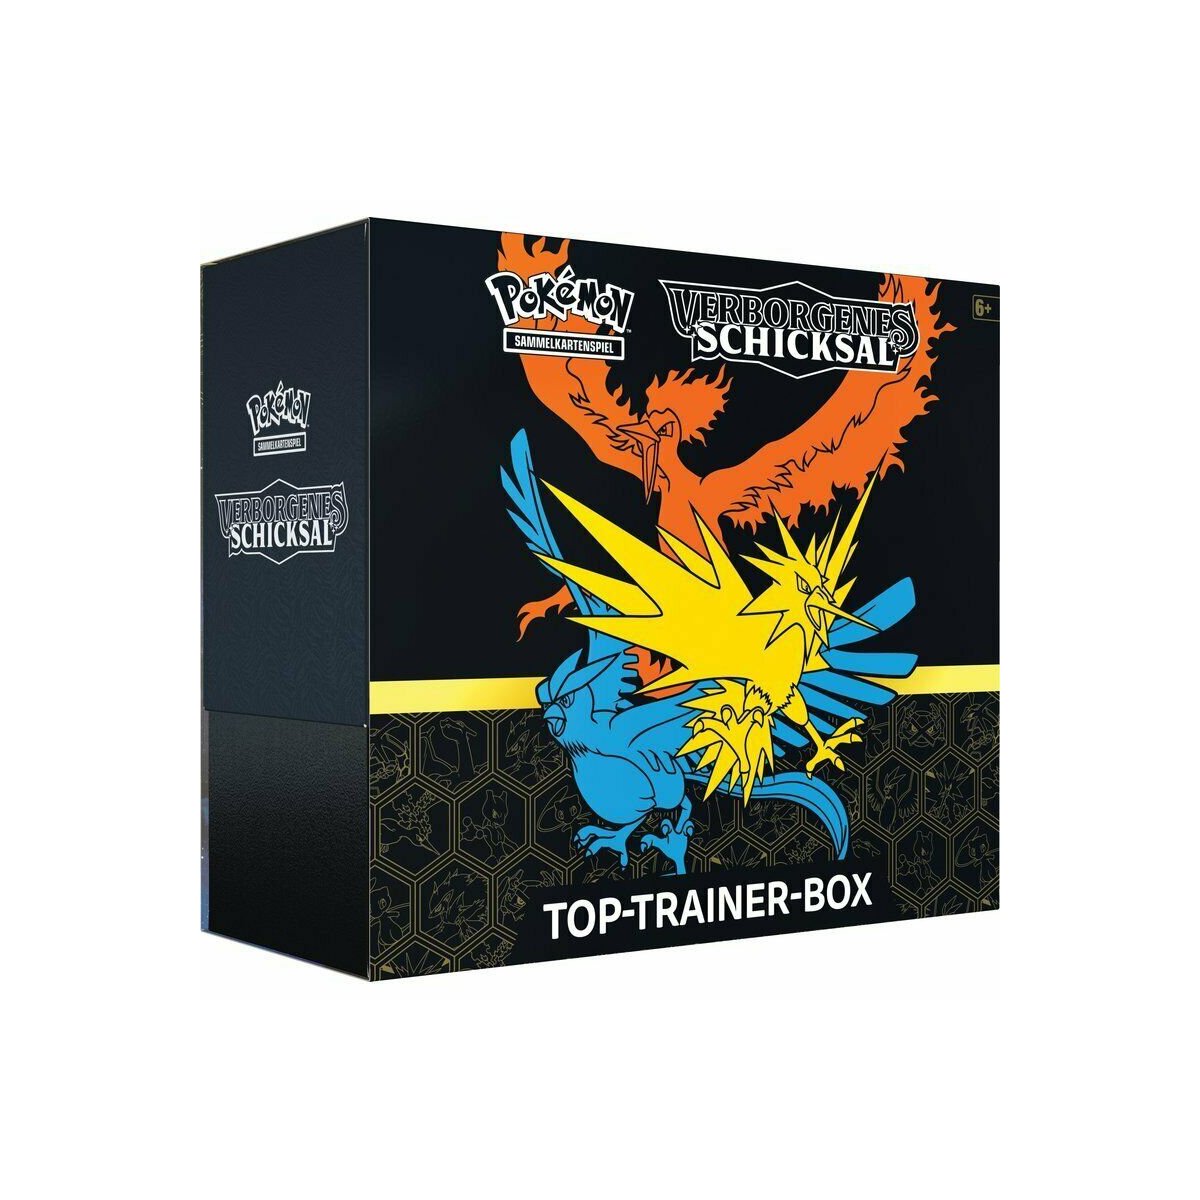 NEU & OVP Schneller Versand Pokemon Fusions Angriff Top Trainer Box Deutsch